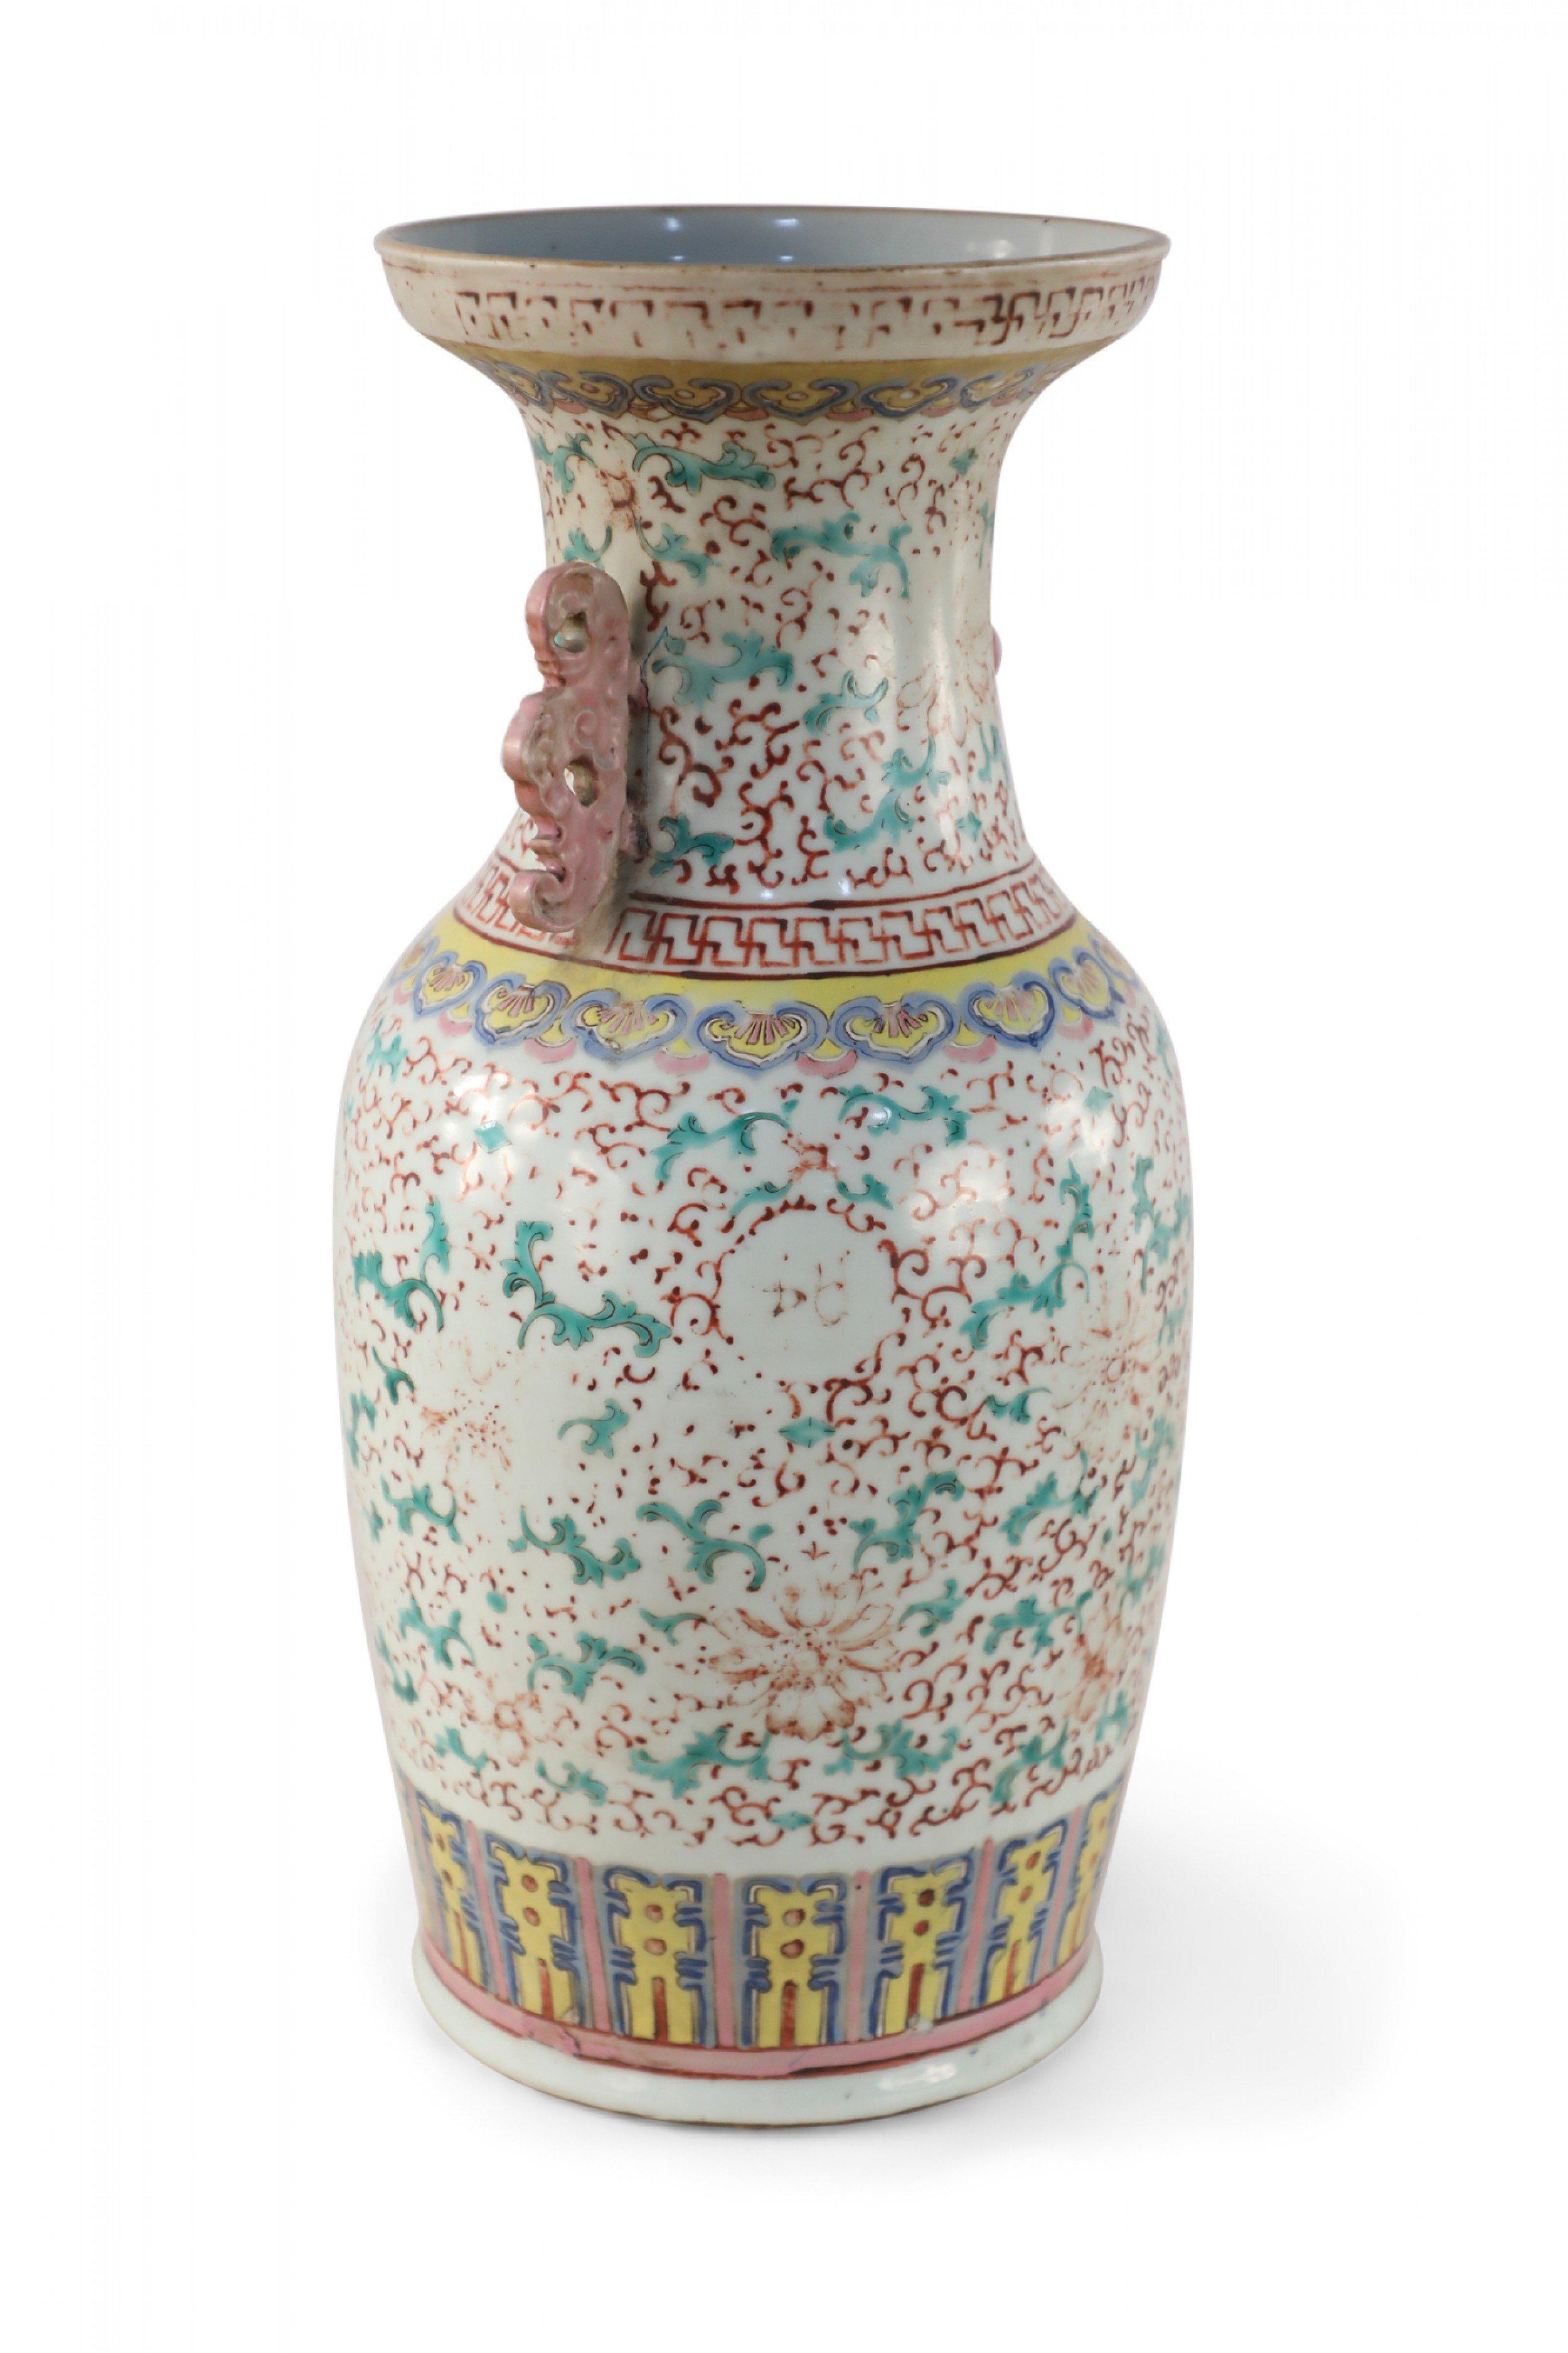 Ancienne urne chinoise (fin du XIXe siècle) en porcelaine blanche décorée d'un motif floral vert et rouge délavé et agrémentée de poignées à volutes rose pâle le long du col.
 